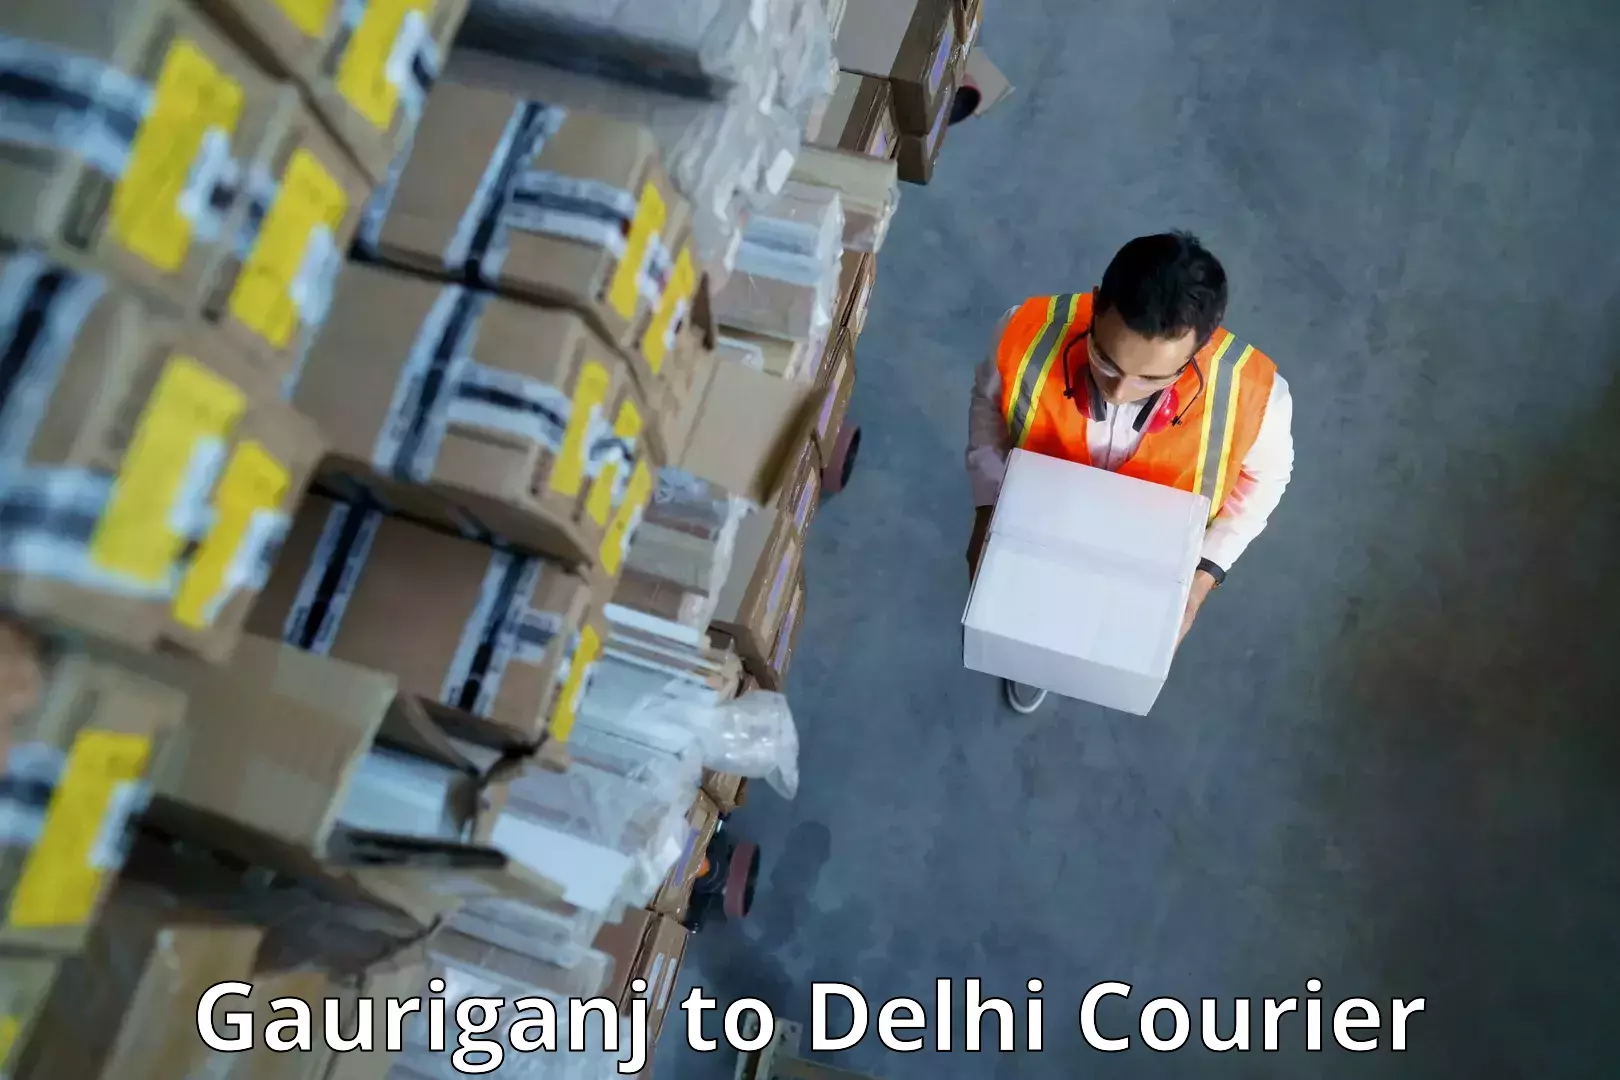 Efficient logistics management Gauriganj to IIT Delhi